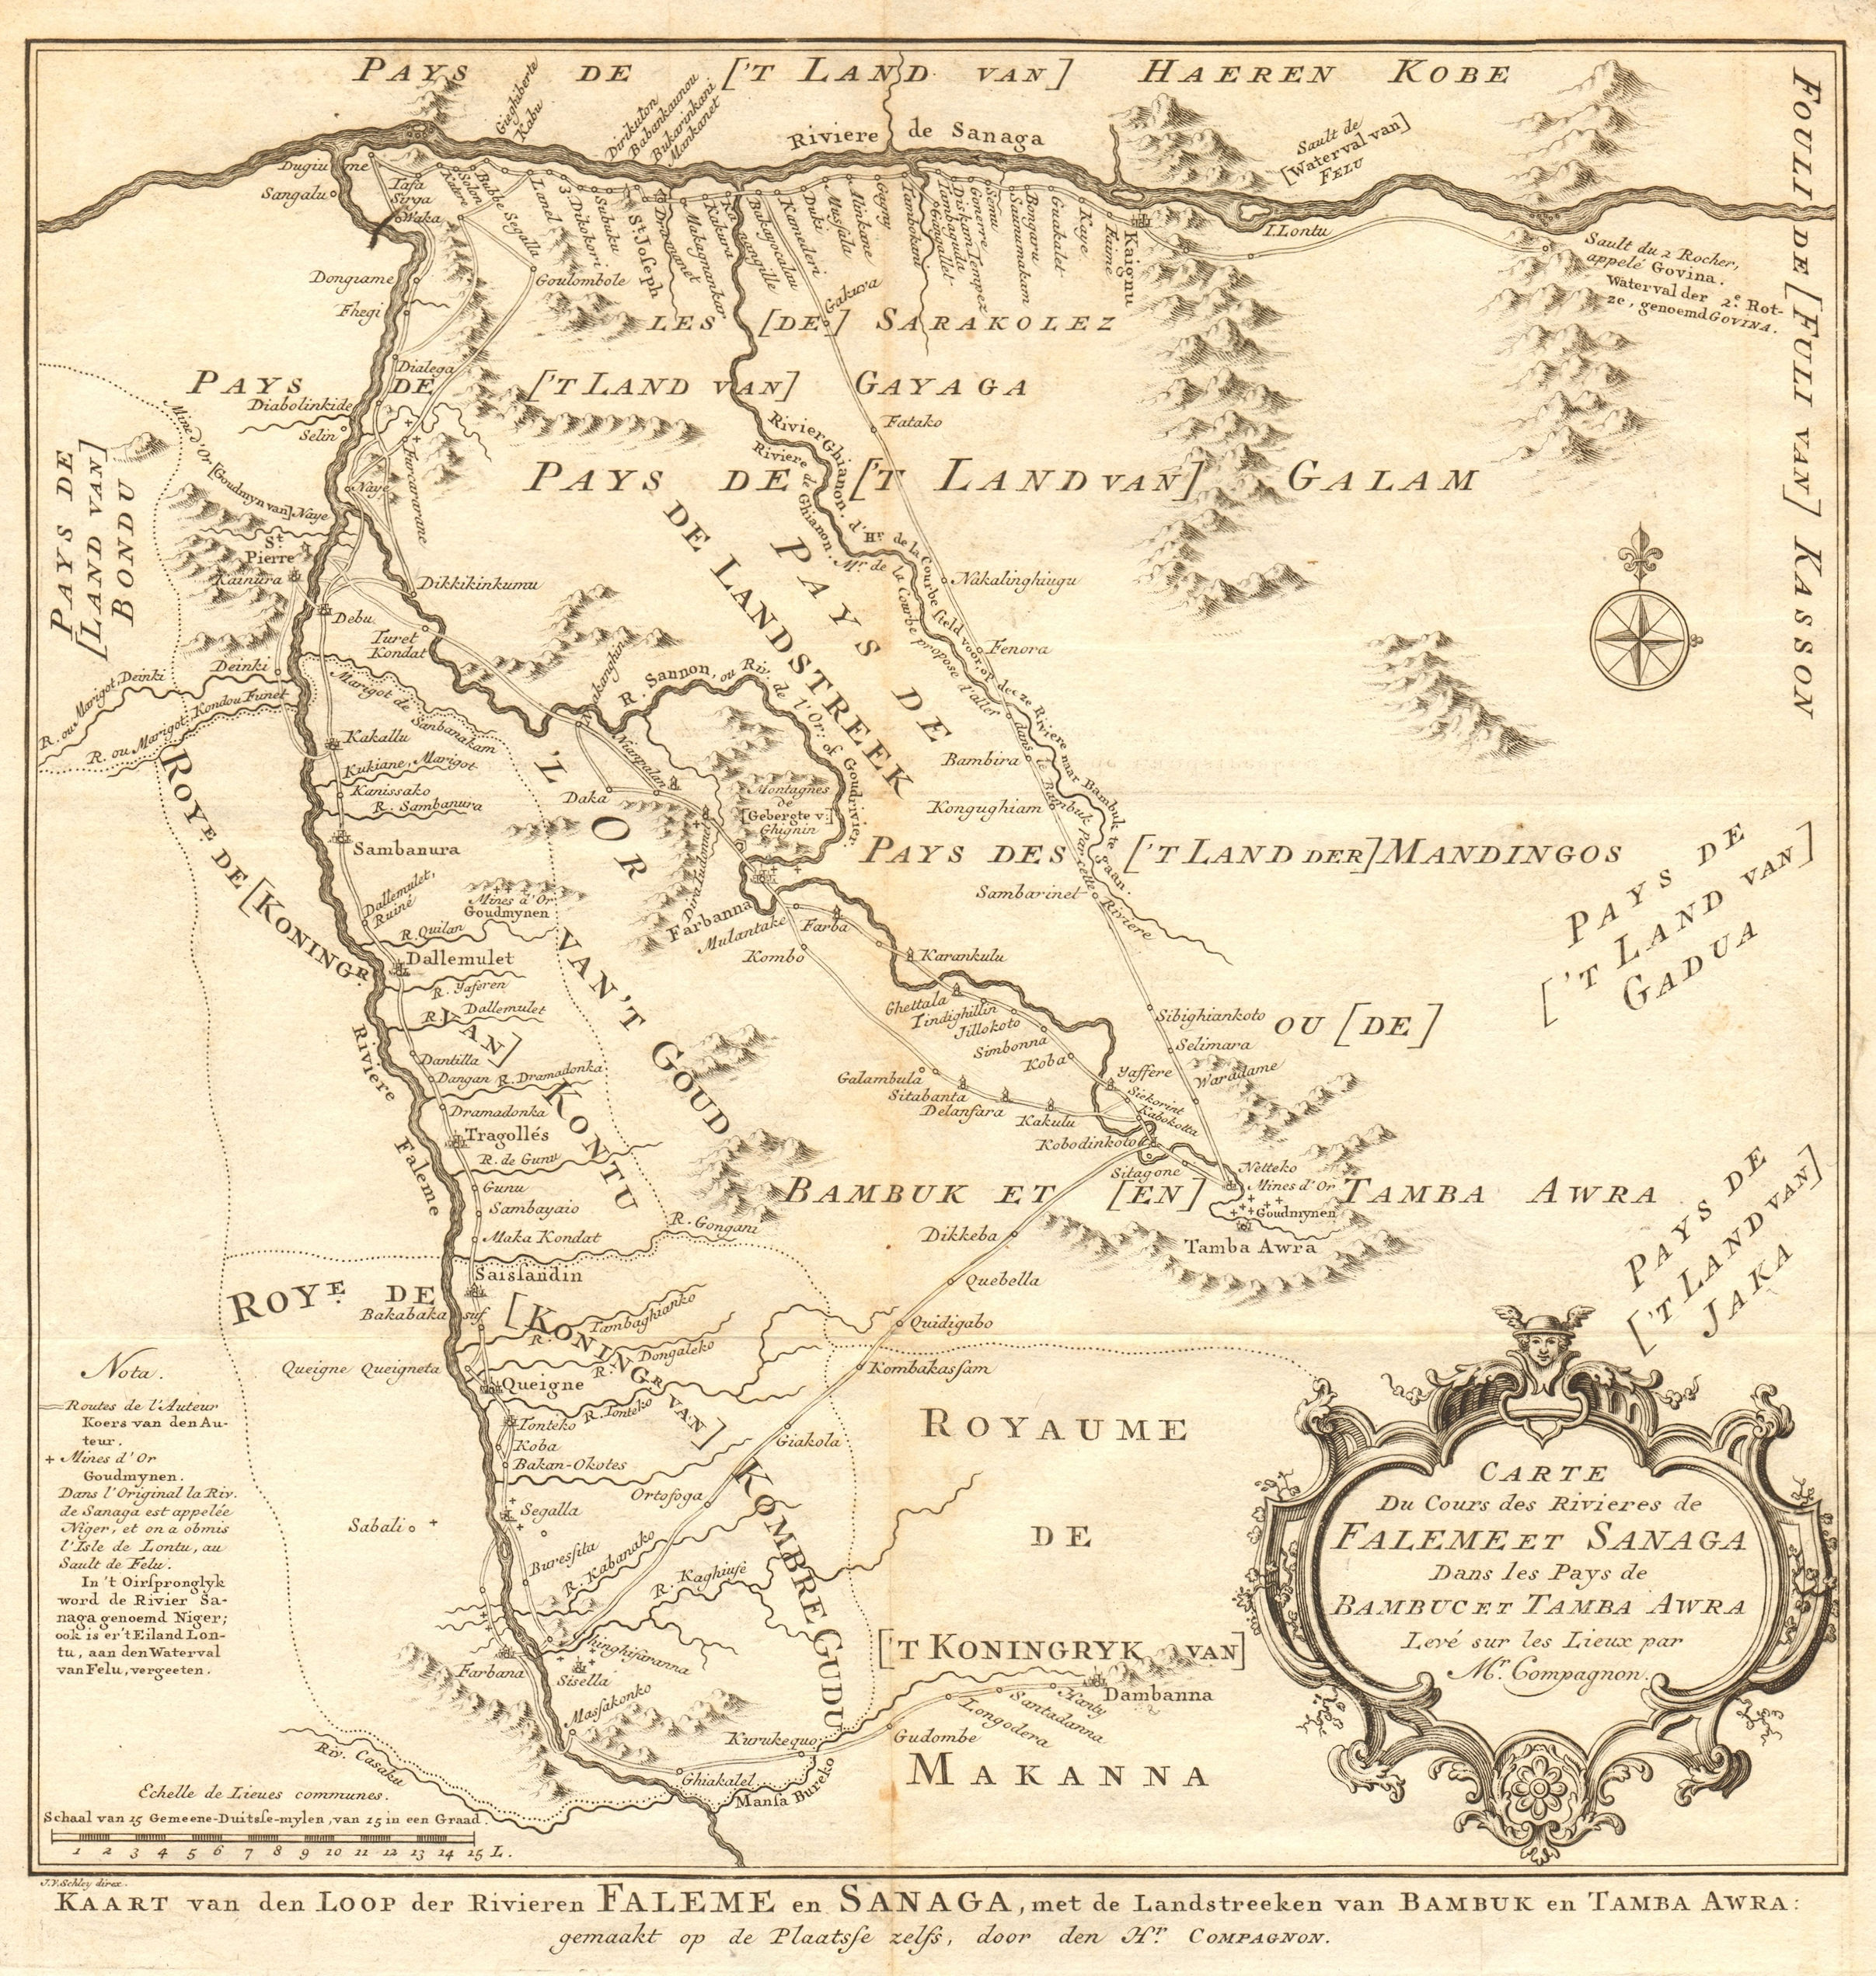 Associate Product Cours des rivières de Falémé & Sanaga. Senegal river Mali BELLIN/SCHLEY 1747 map